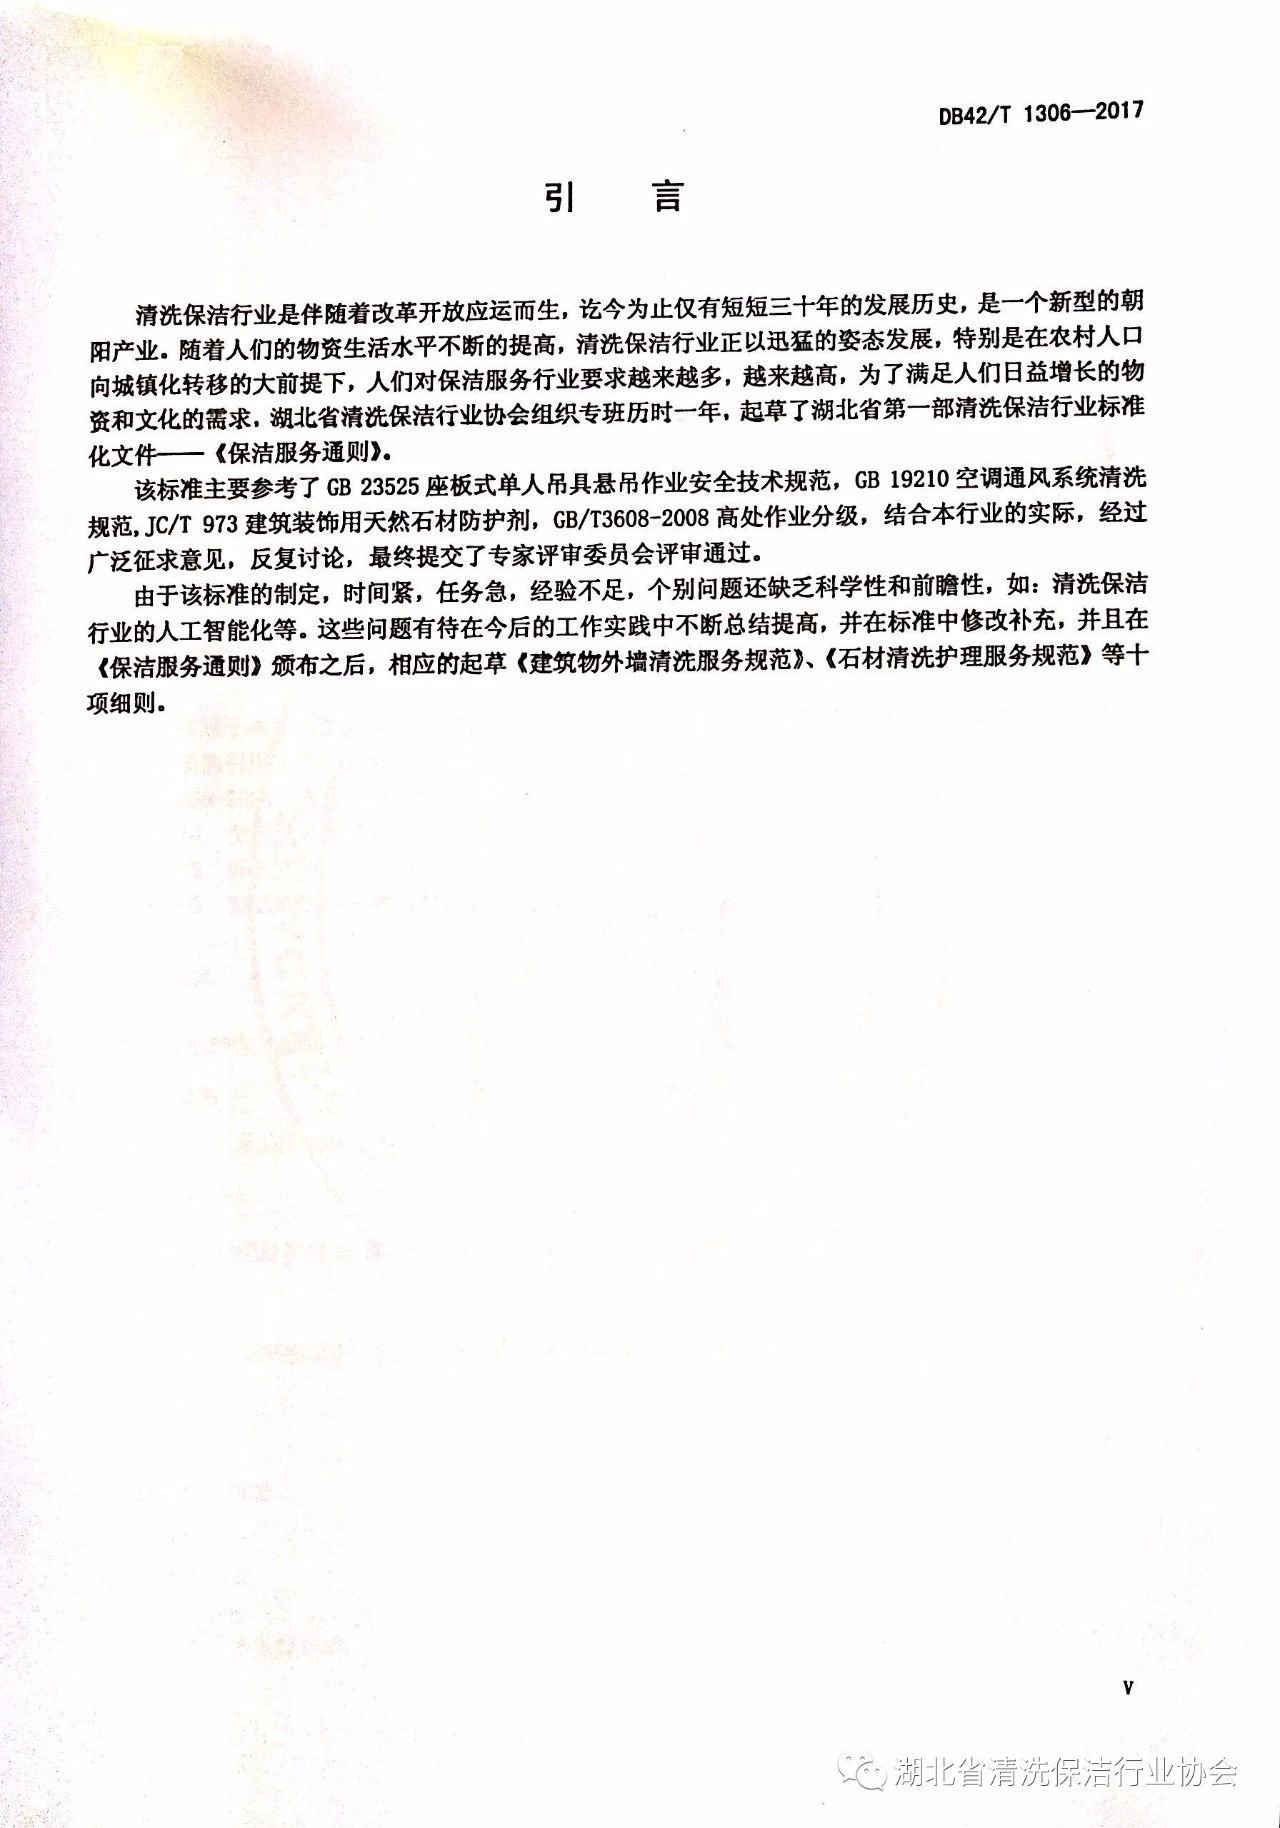 湖北省清洗保洁行业协会第一部地方标准《保洁服务通则》颁布实施4.jpg